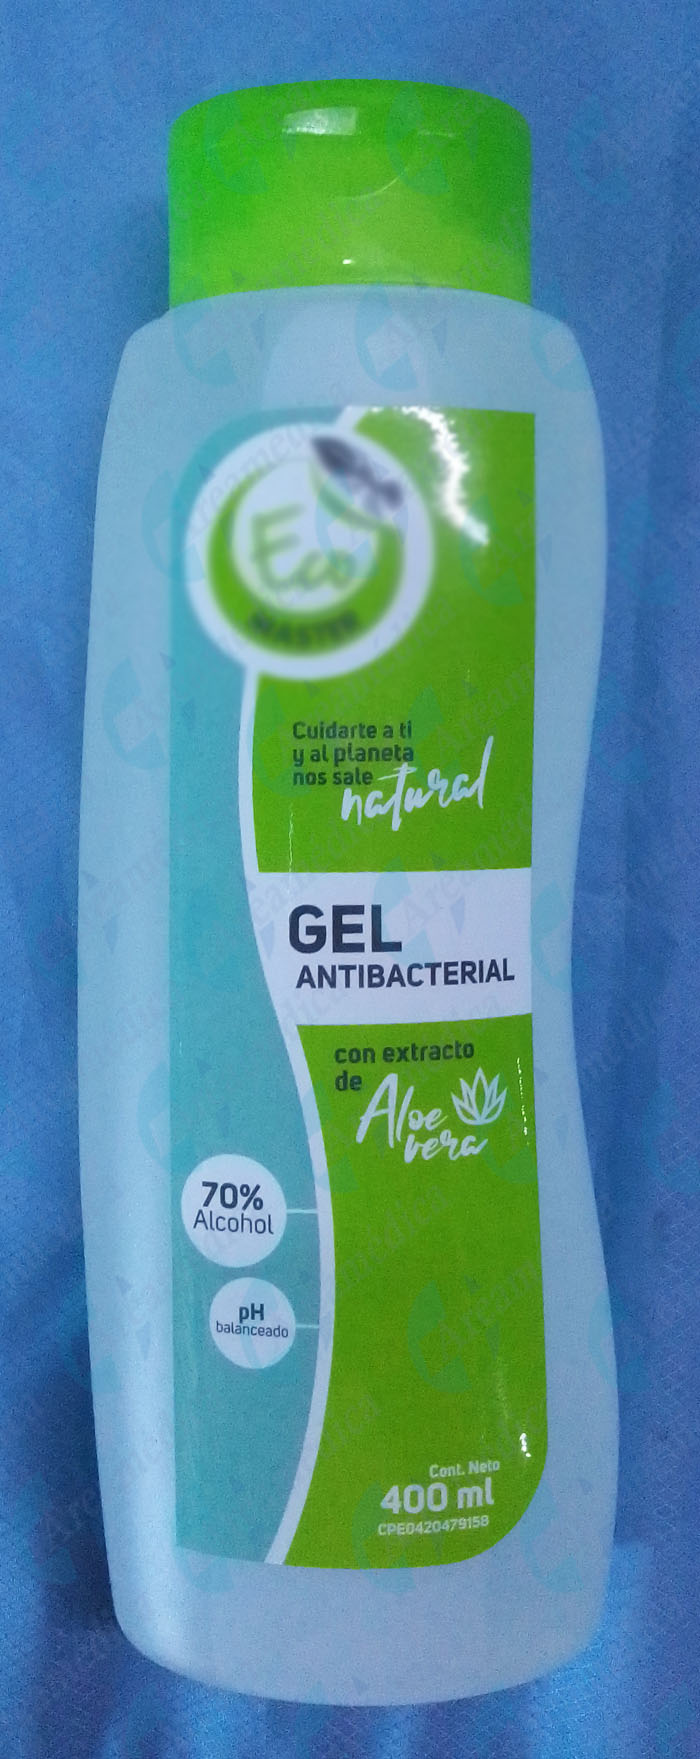 Gel antibacterial con aloe vera 400 ml